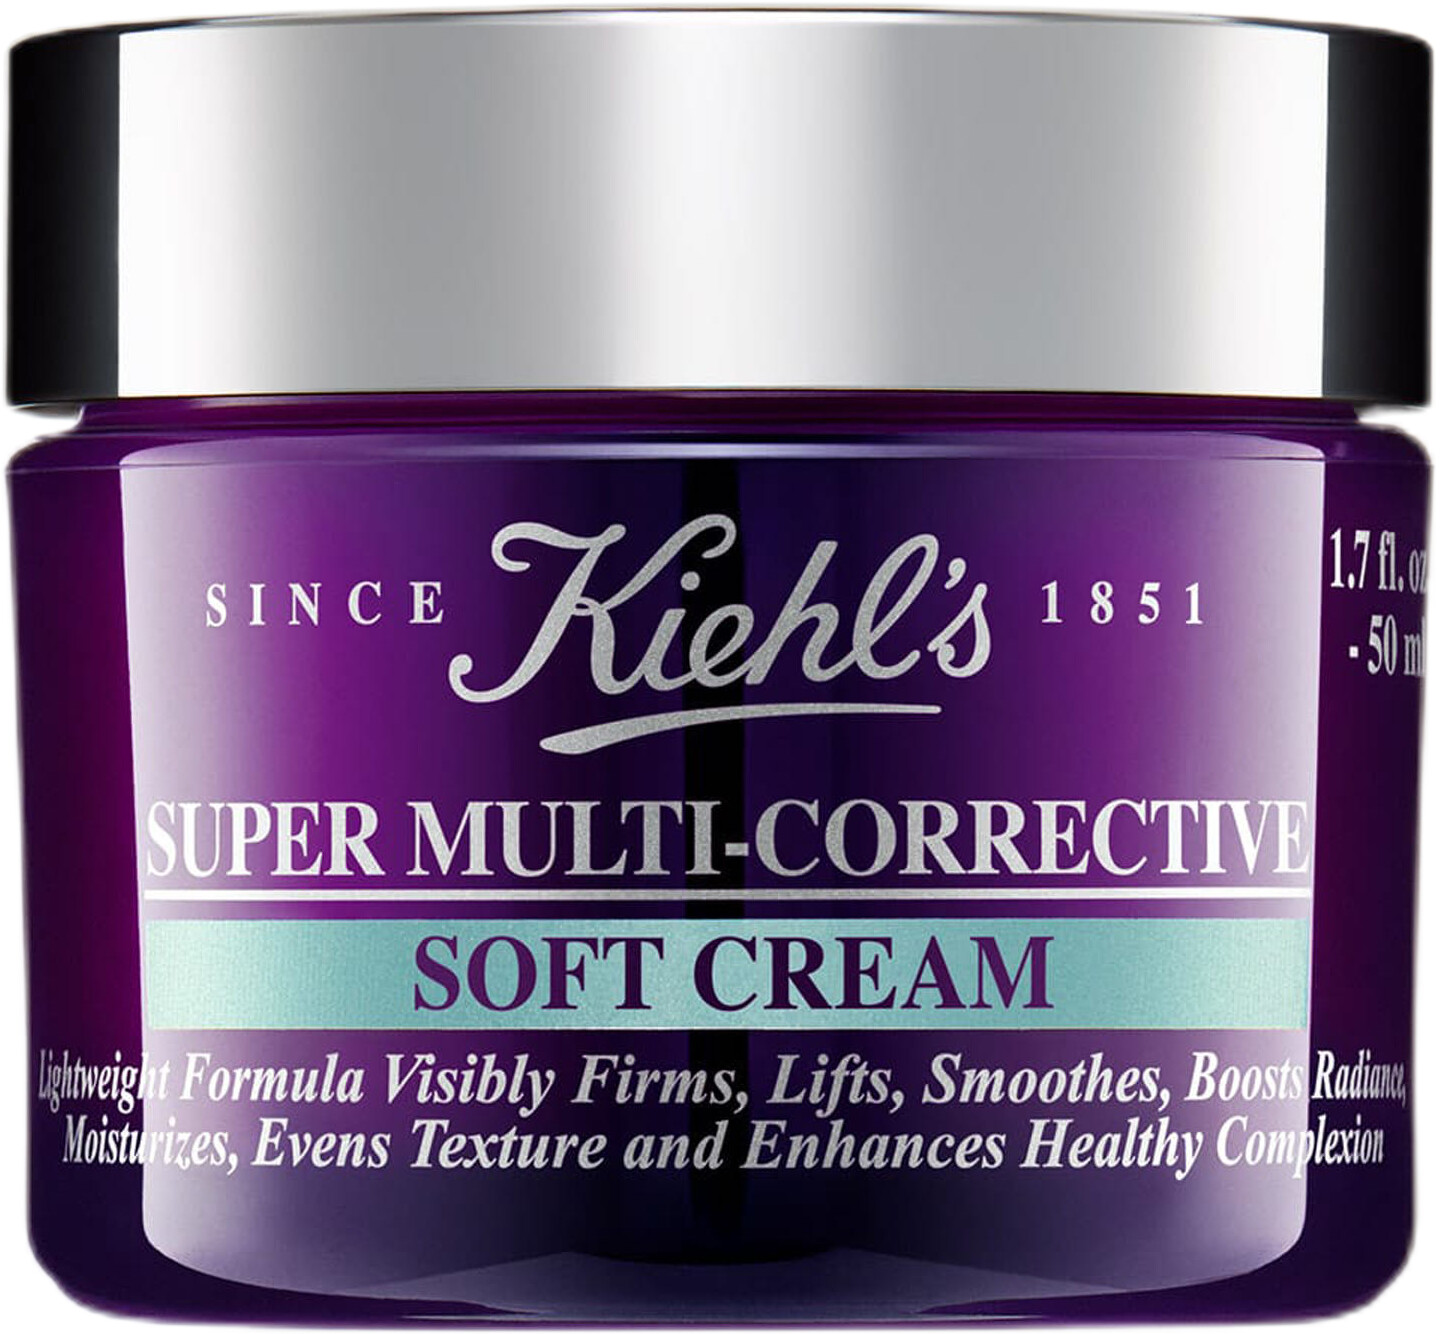 Kiehl's Super Multi-Corrective Soft Cream 50ml